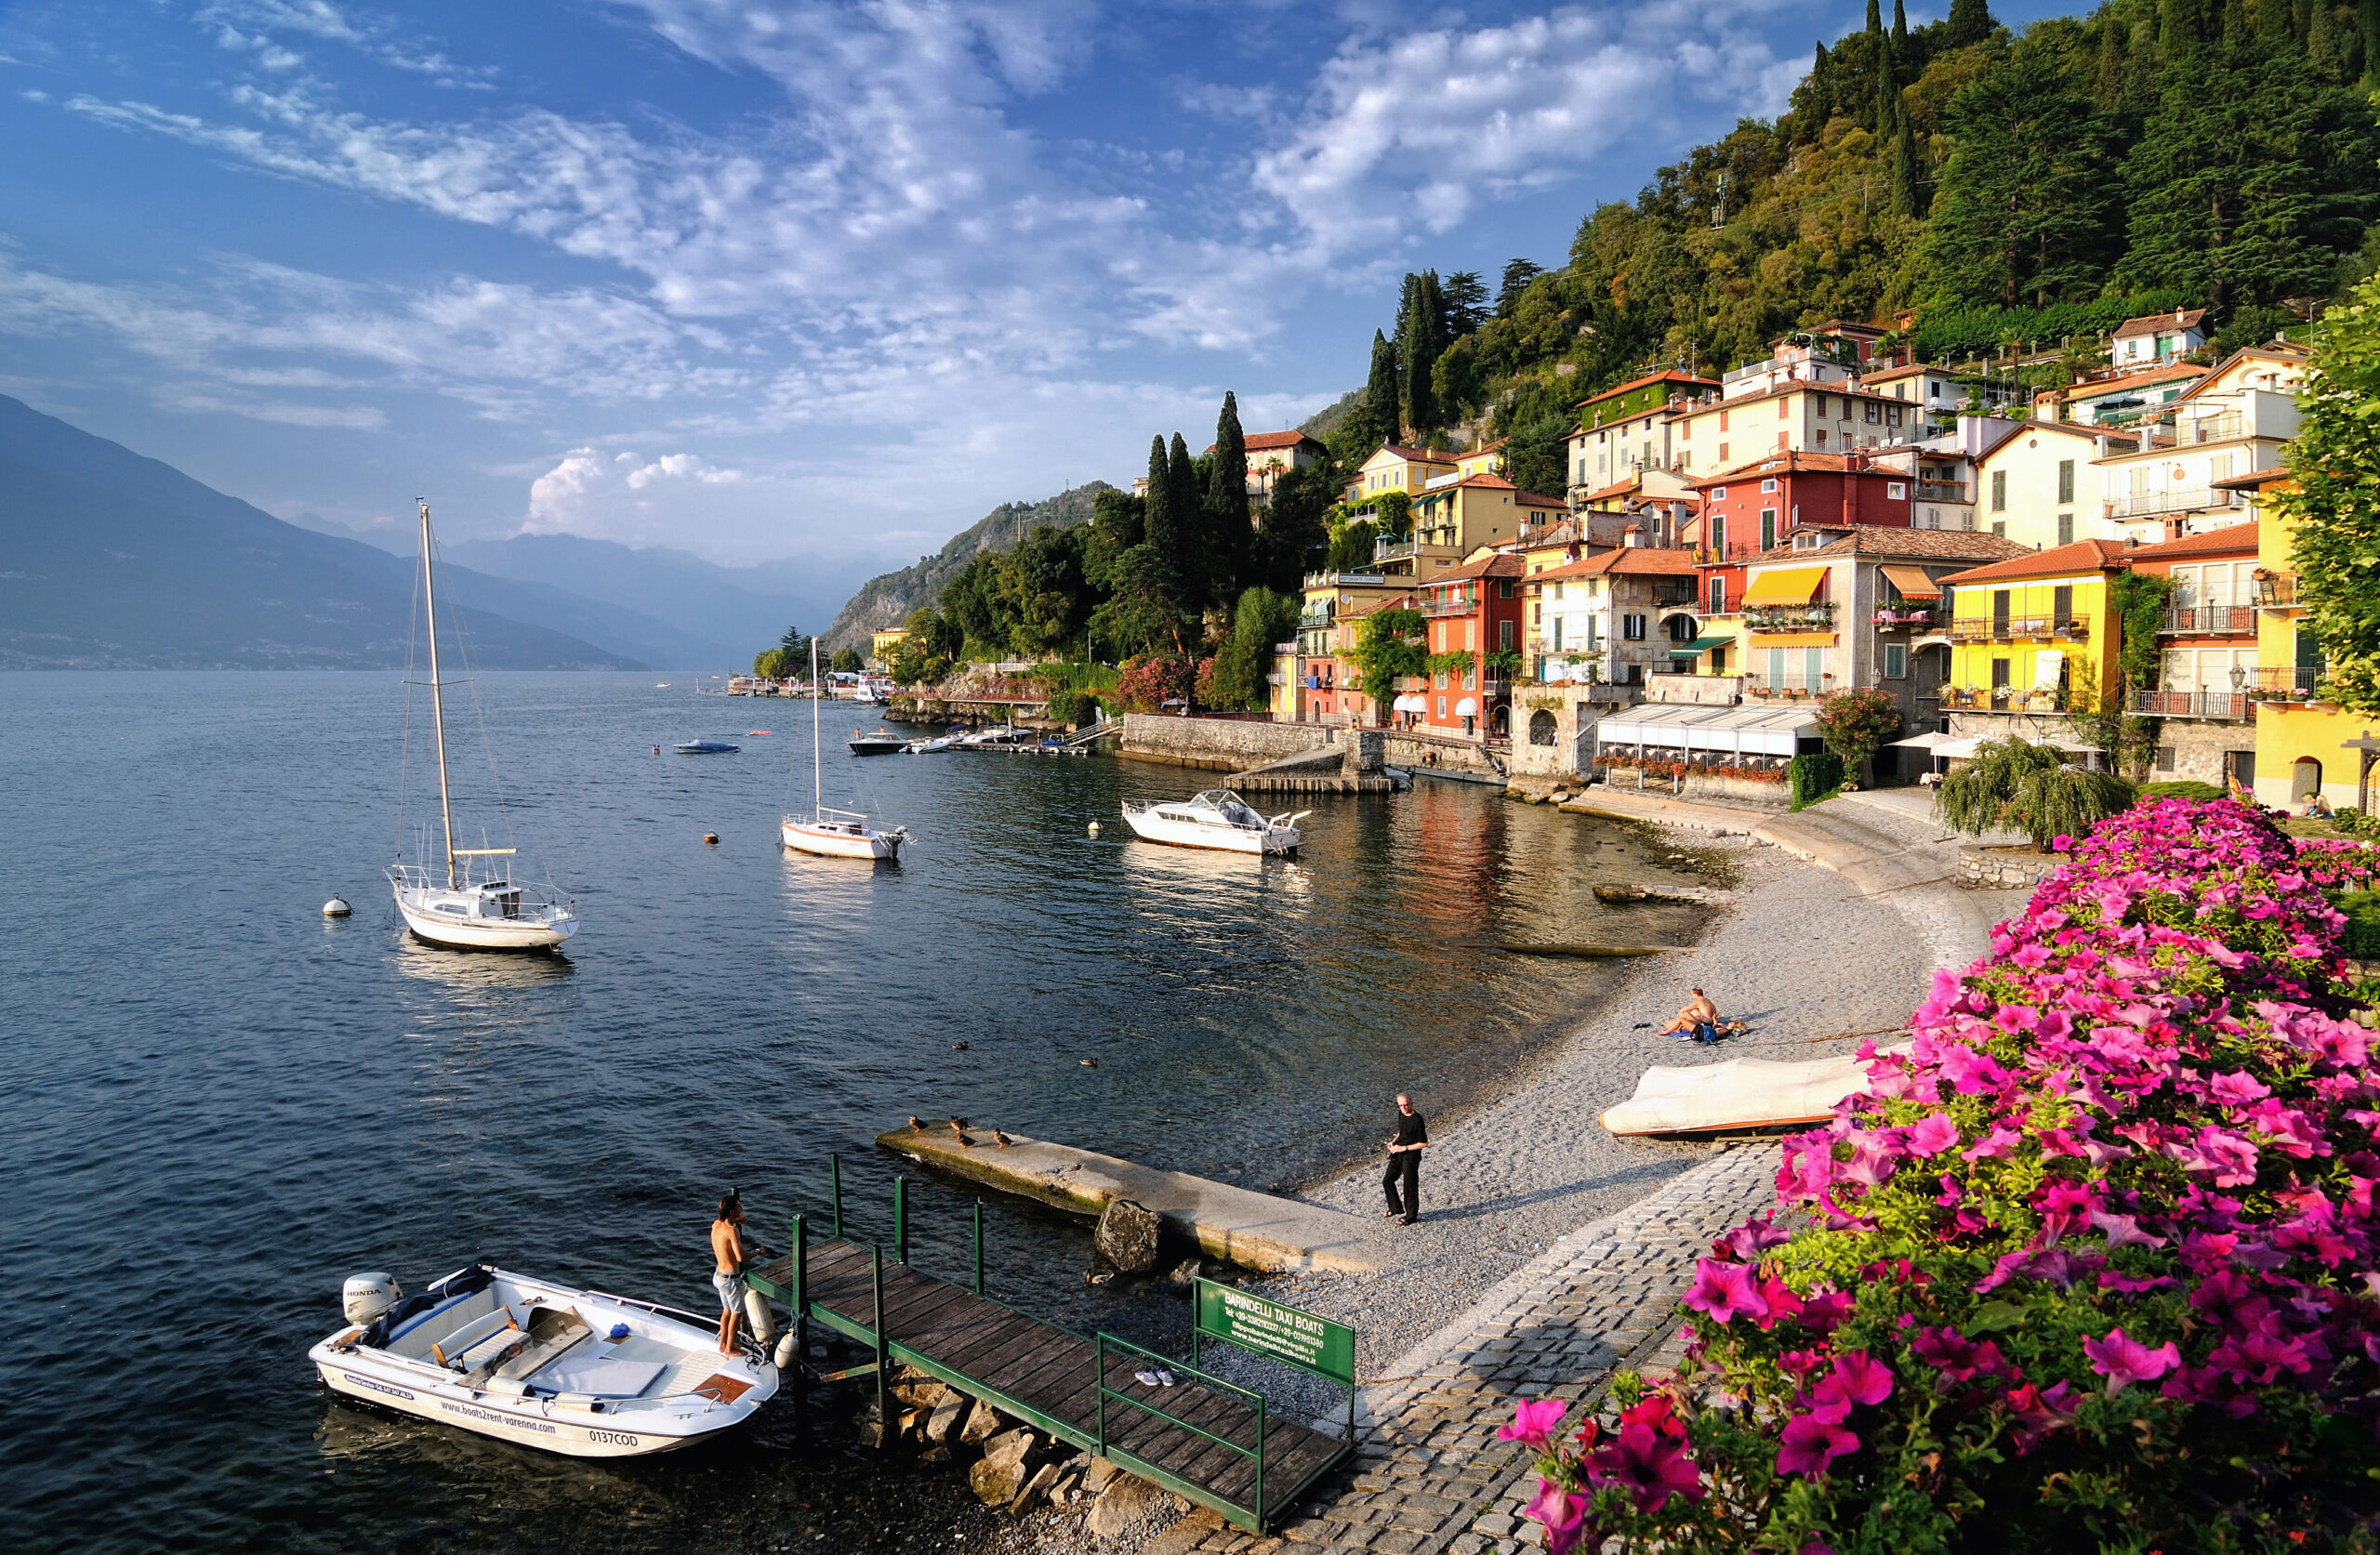 Comer See Urlaub: Entdecken Sie das Juwel der Lombardei